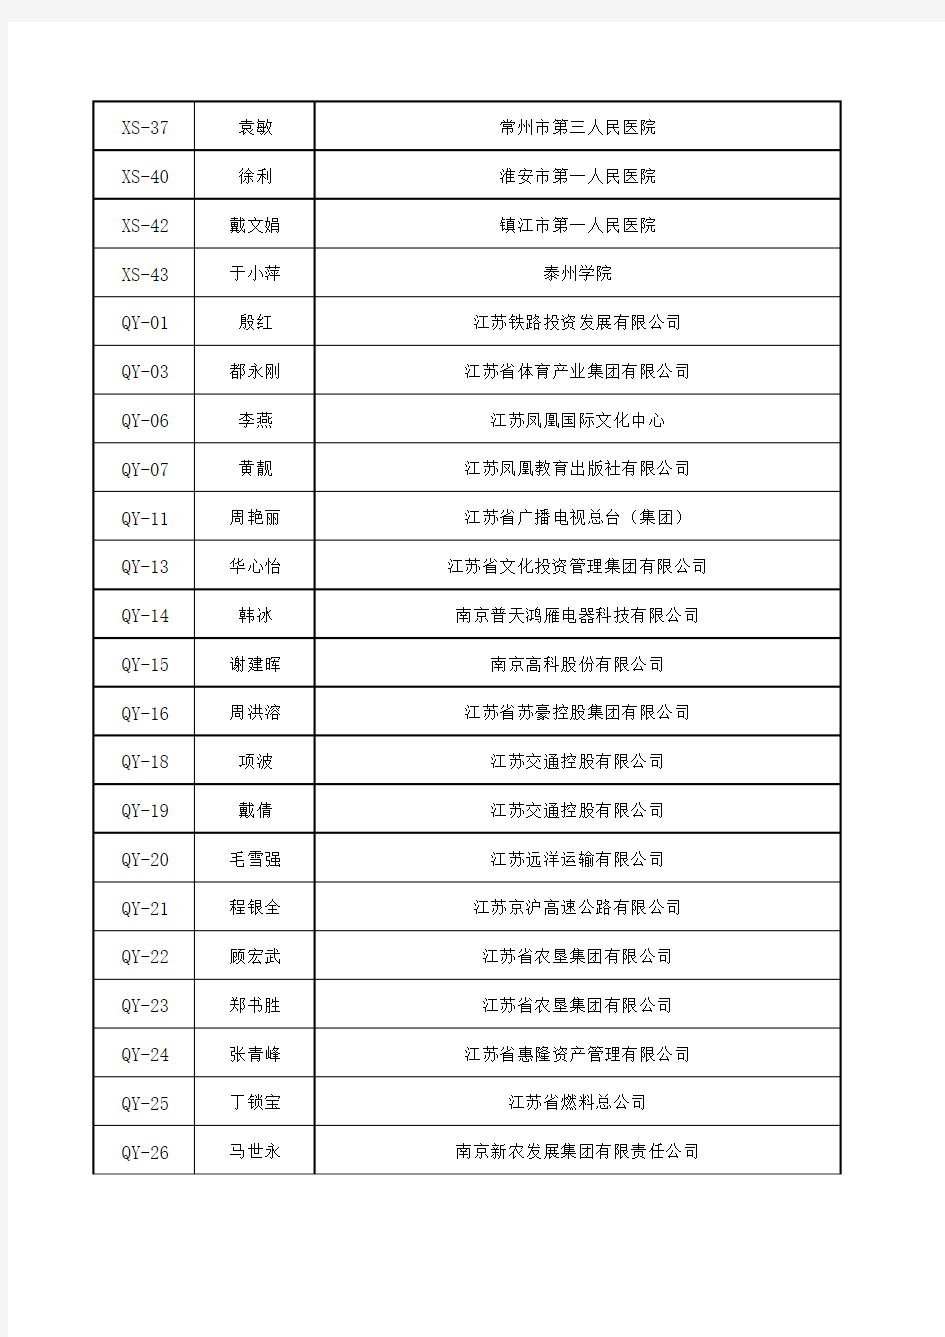 江苏省第二届会计领军人才拟面试名单